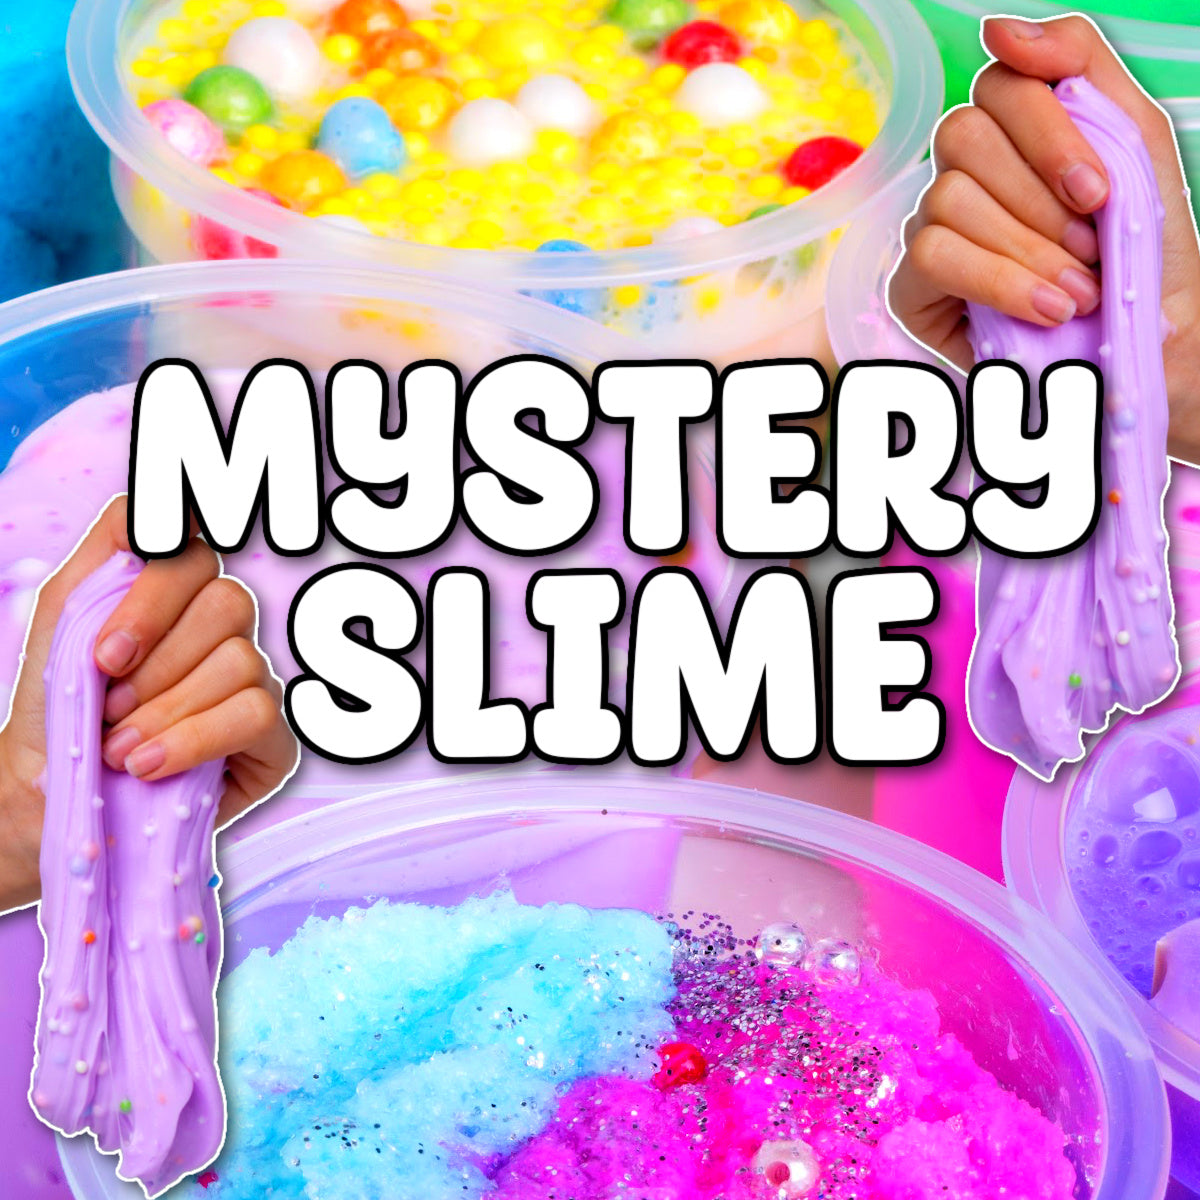 Merry Stitchmas Slime DIY – Shop Nichole Jacklyne